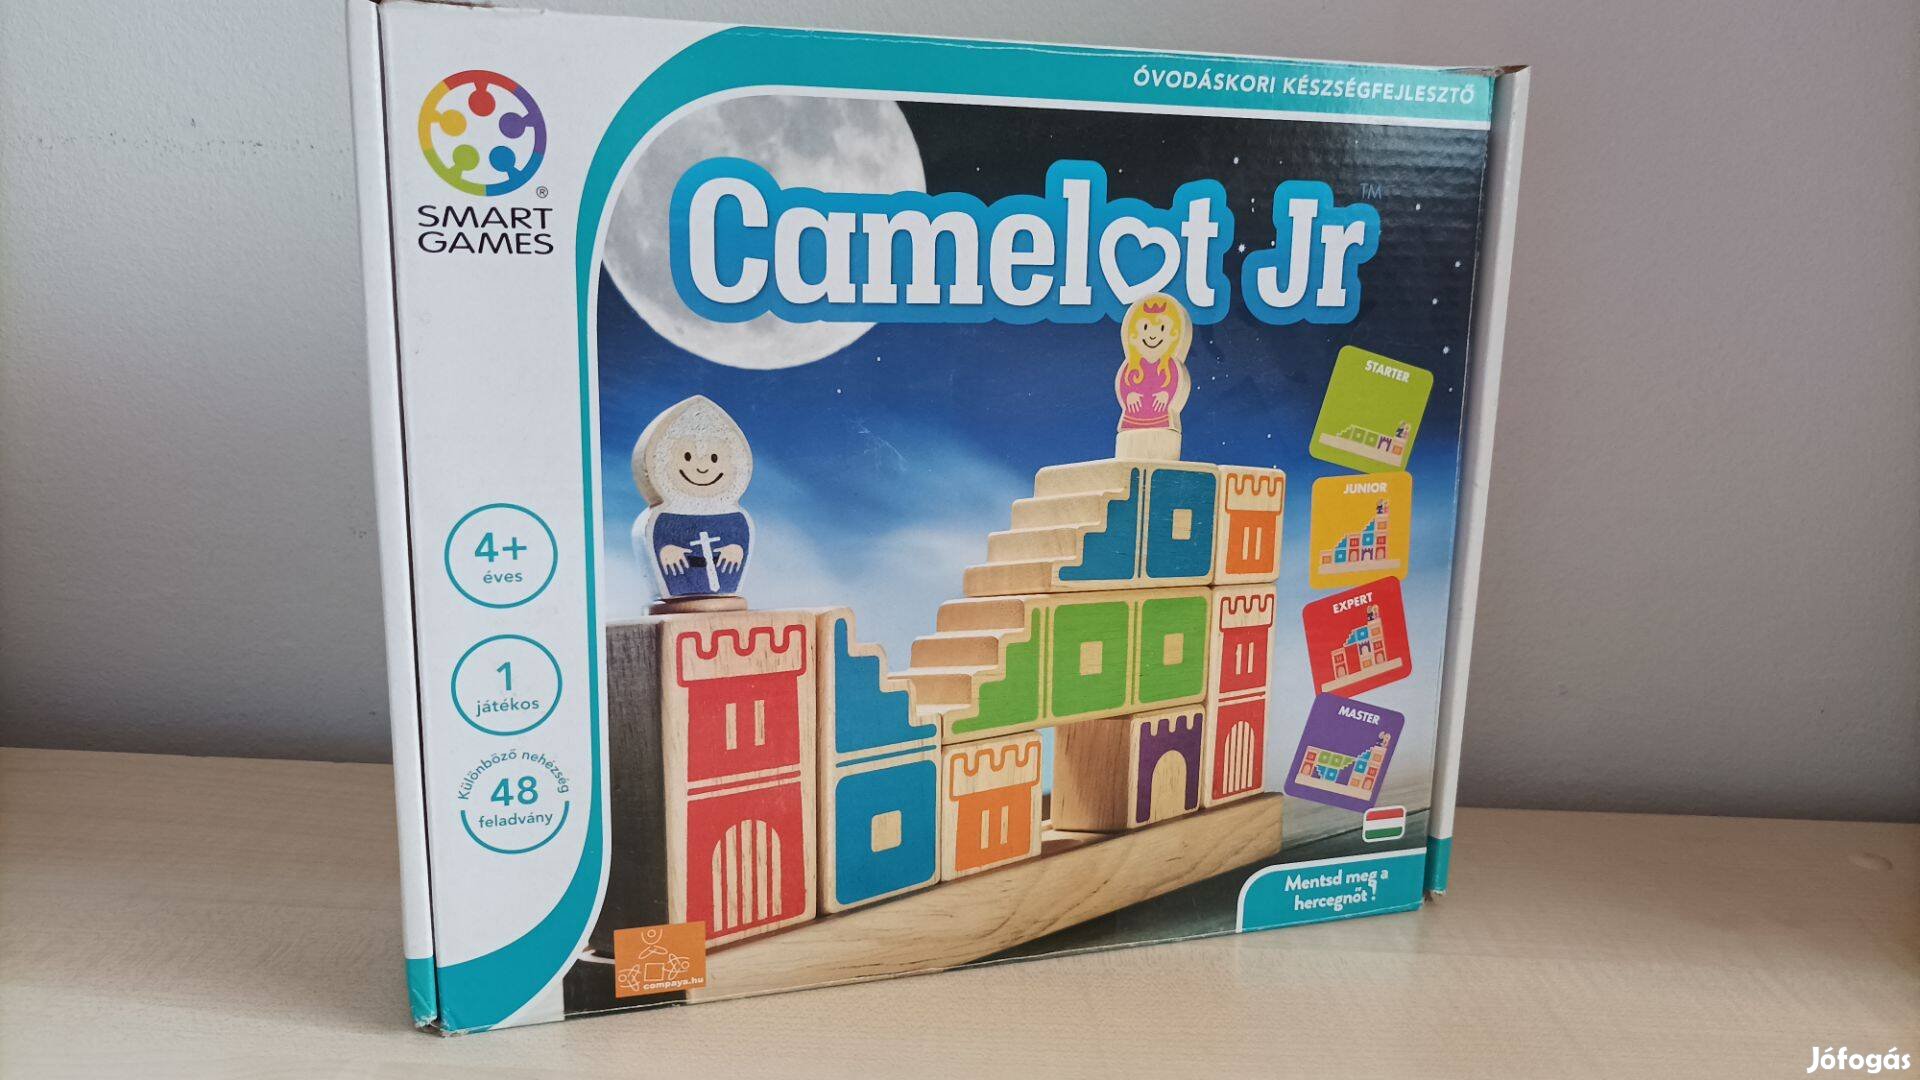 Smart Games Camelot jr